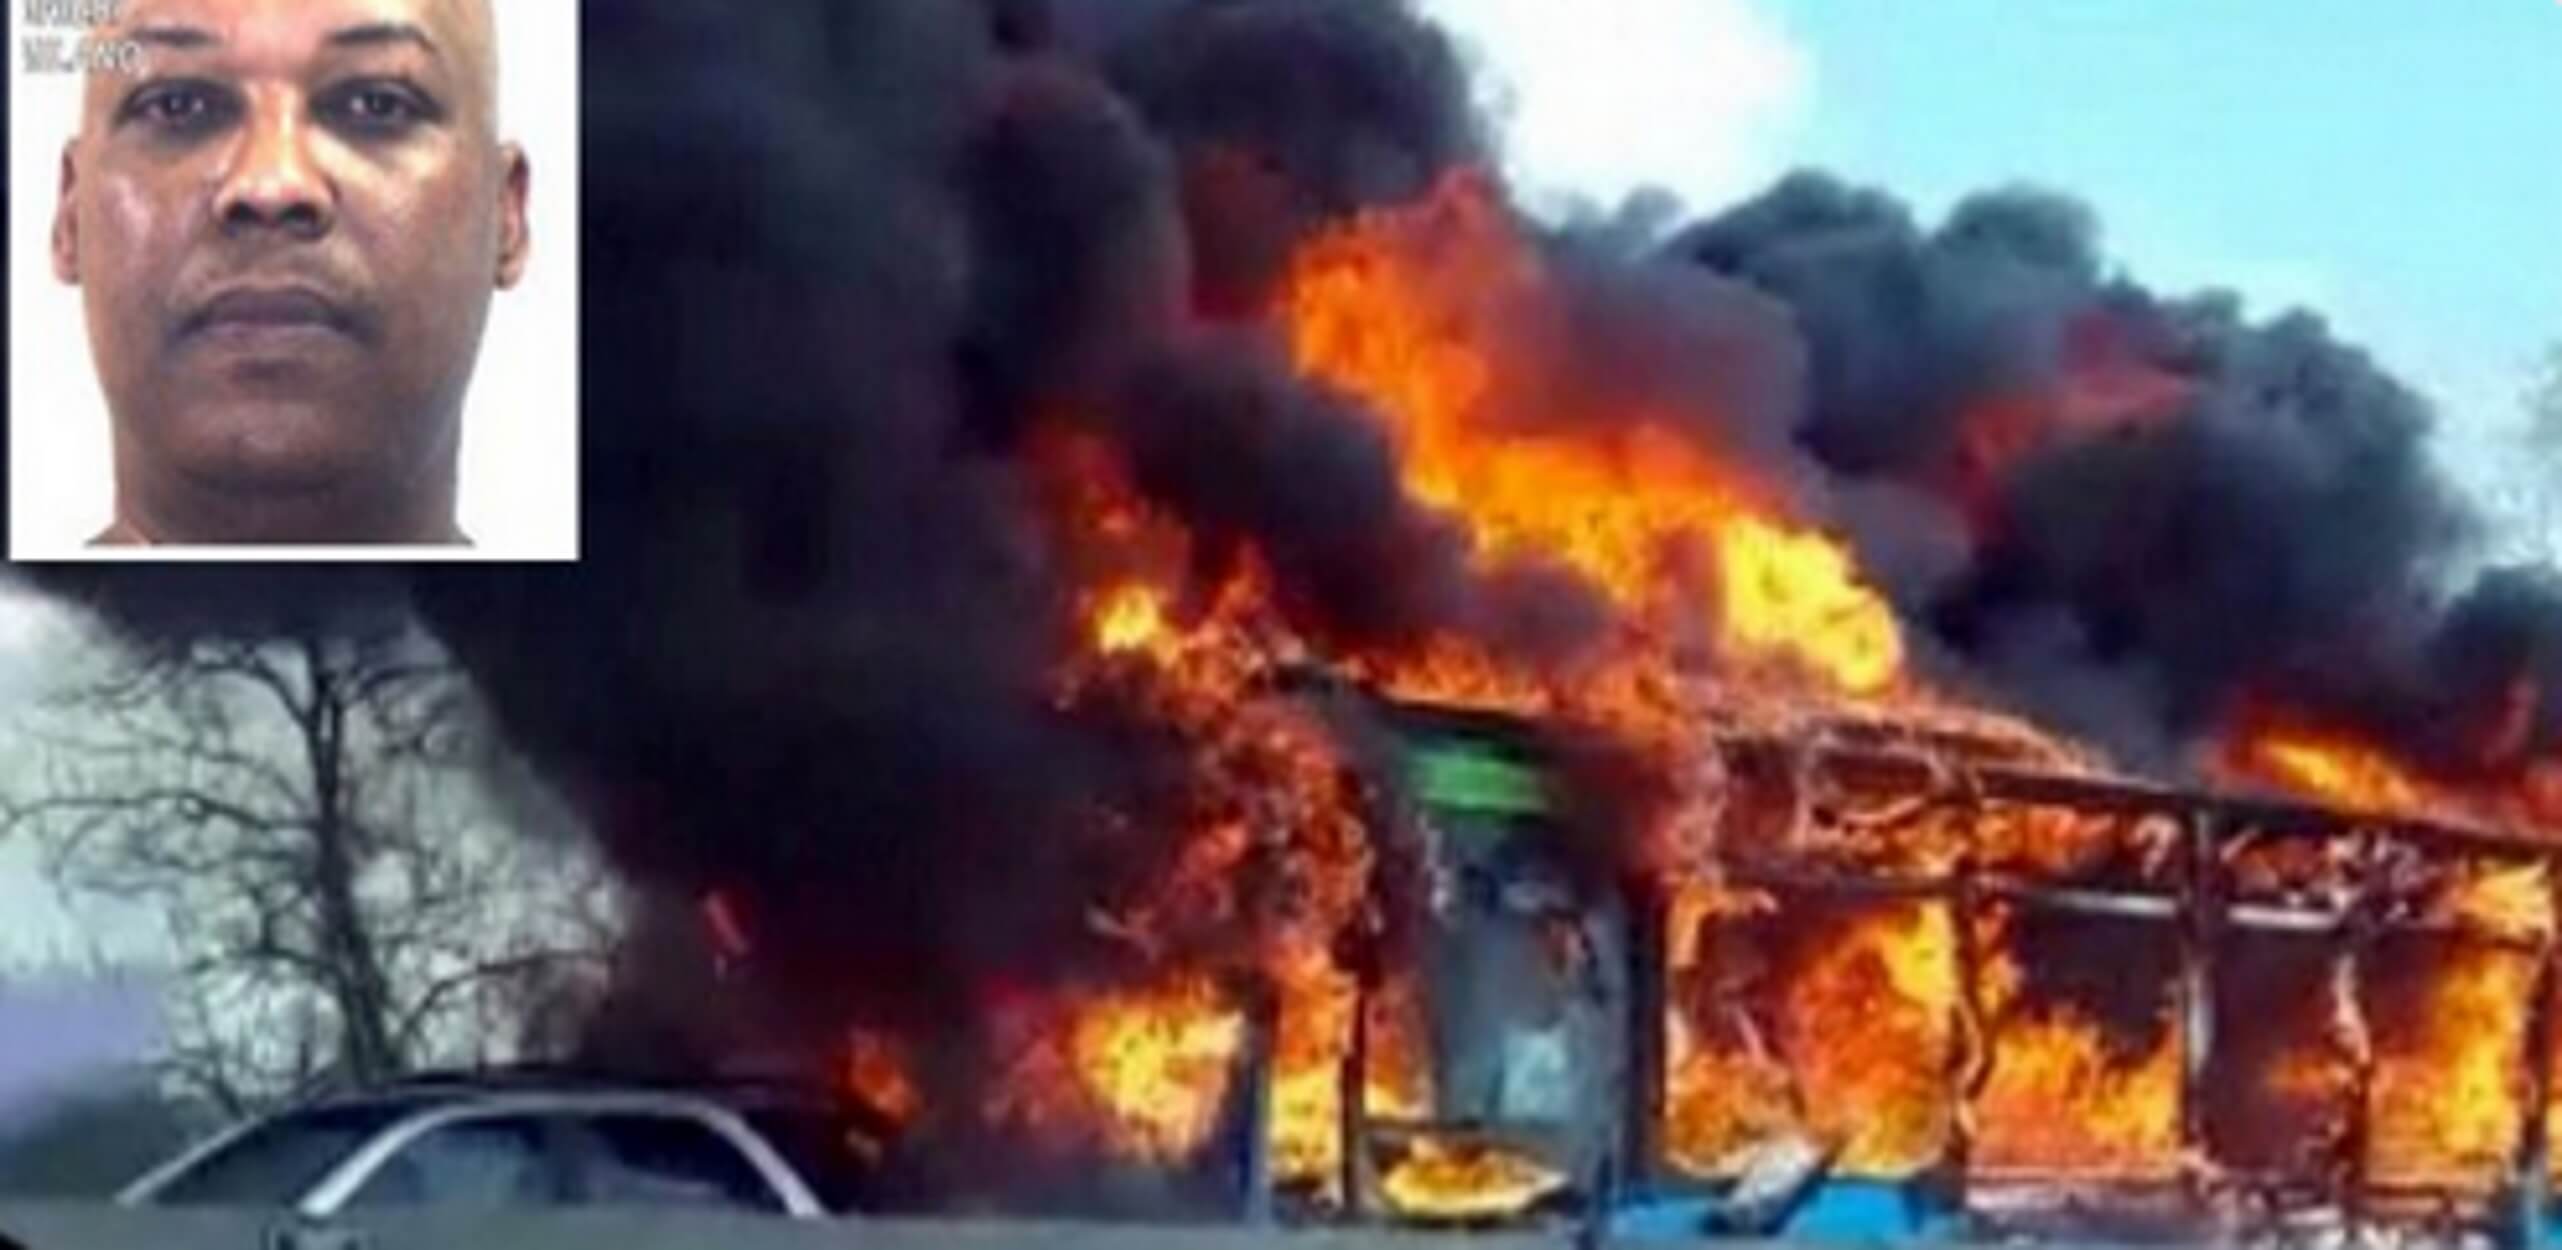 Μιλάνο: Έλυσε τη σιωπή του ο οδηγός που έβαλε φωτιά στο σχολικό λεωφορείο! video